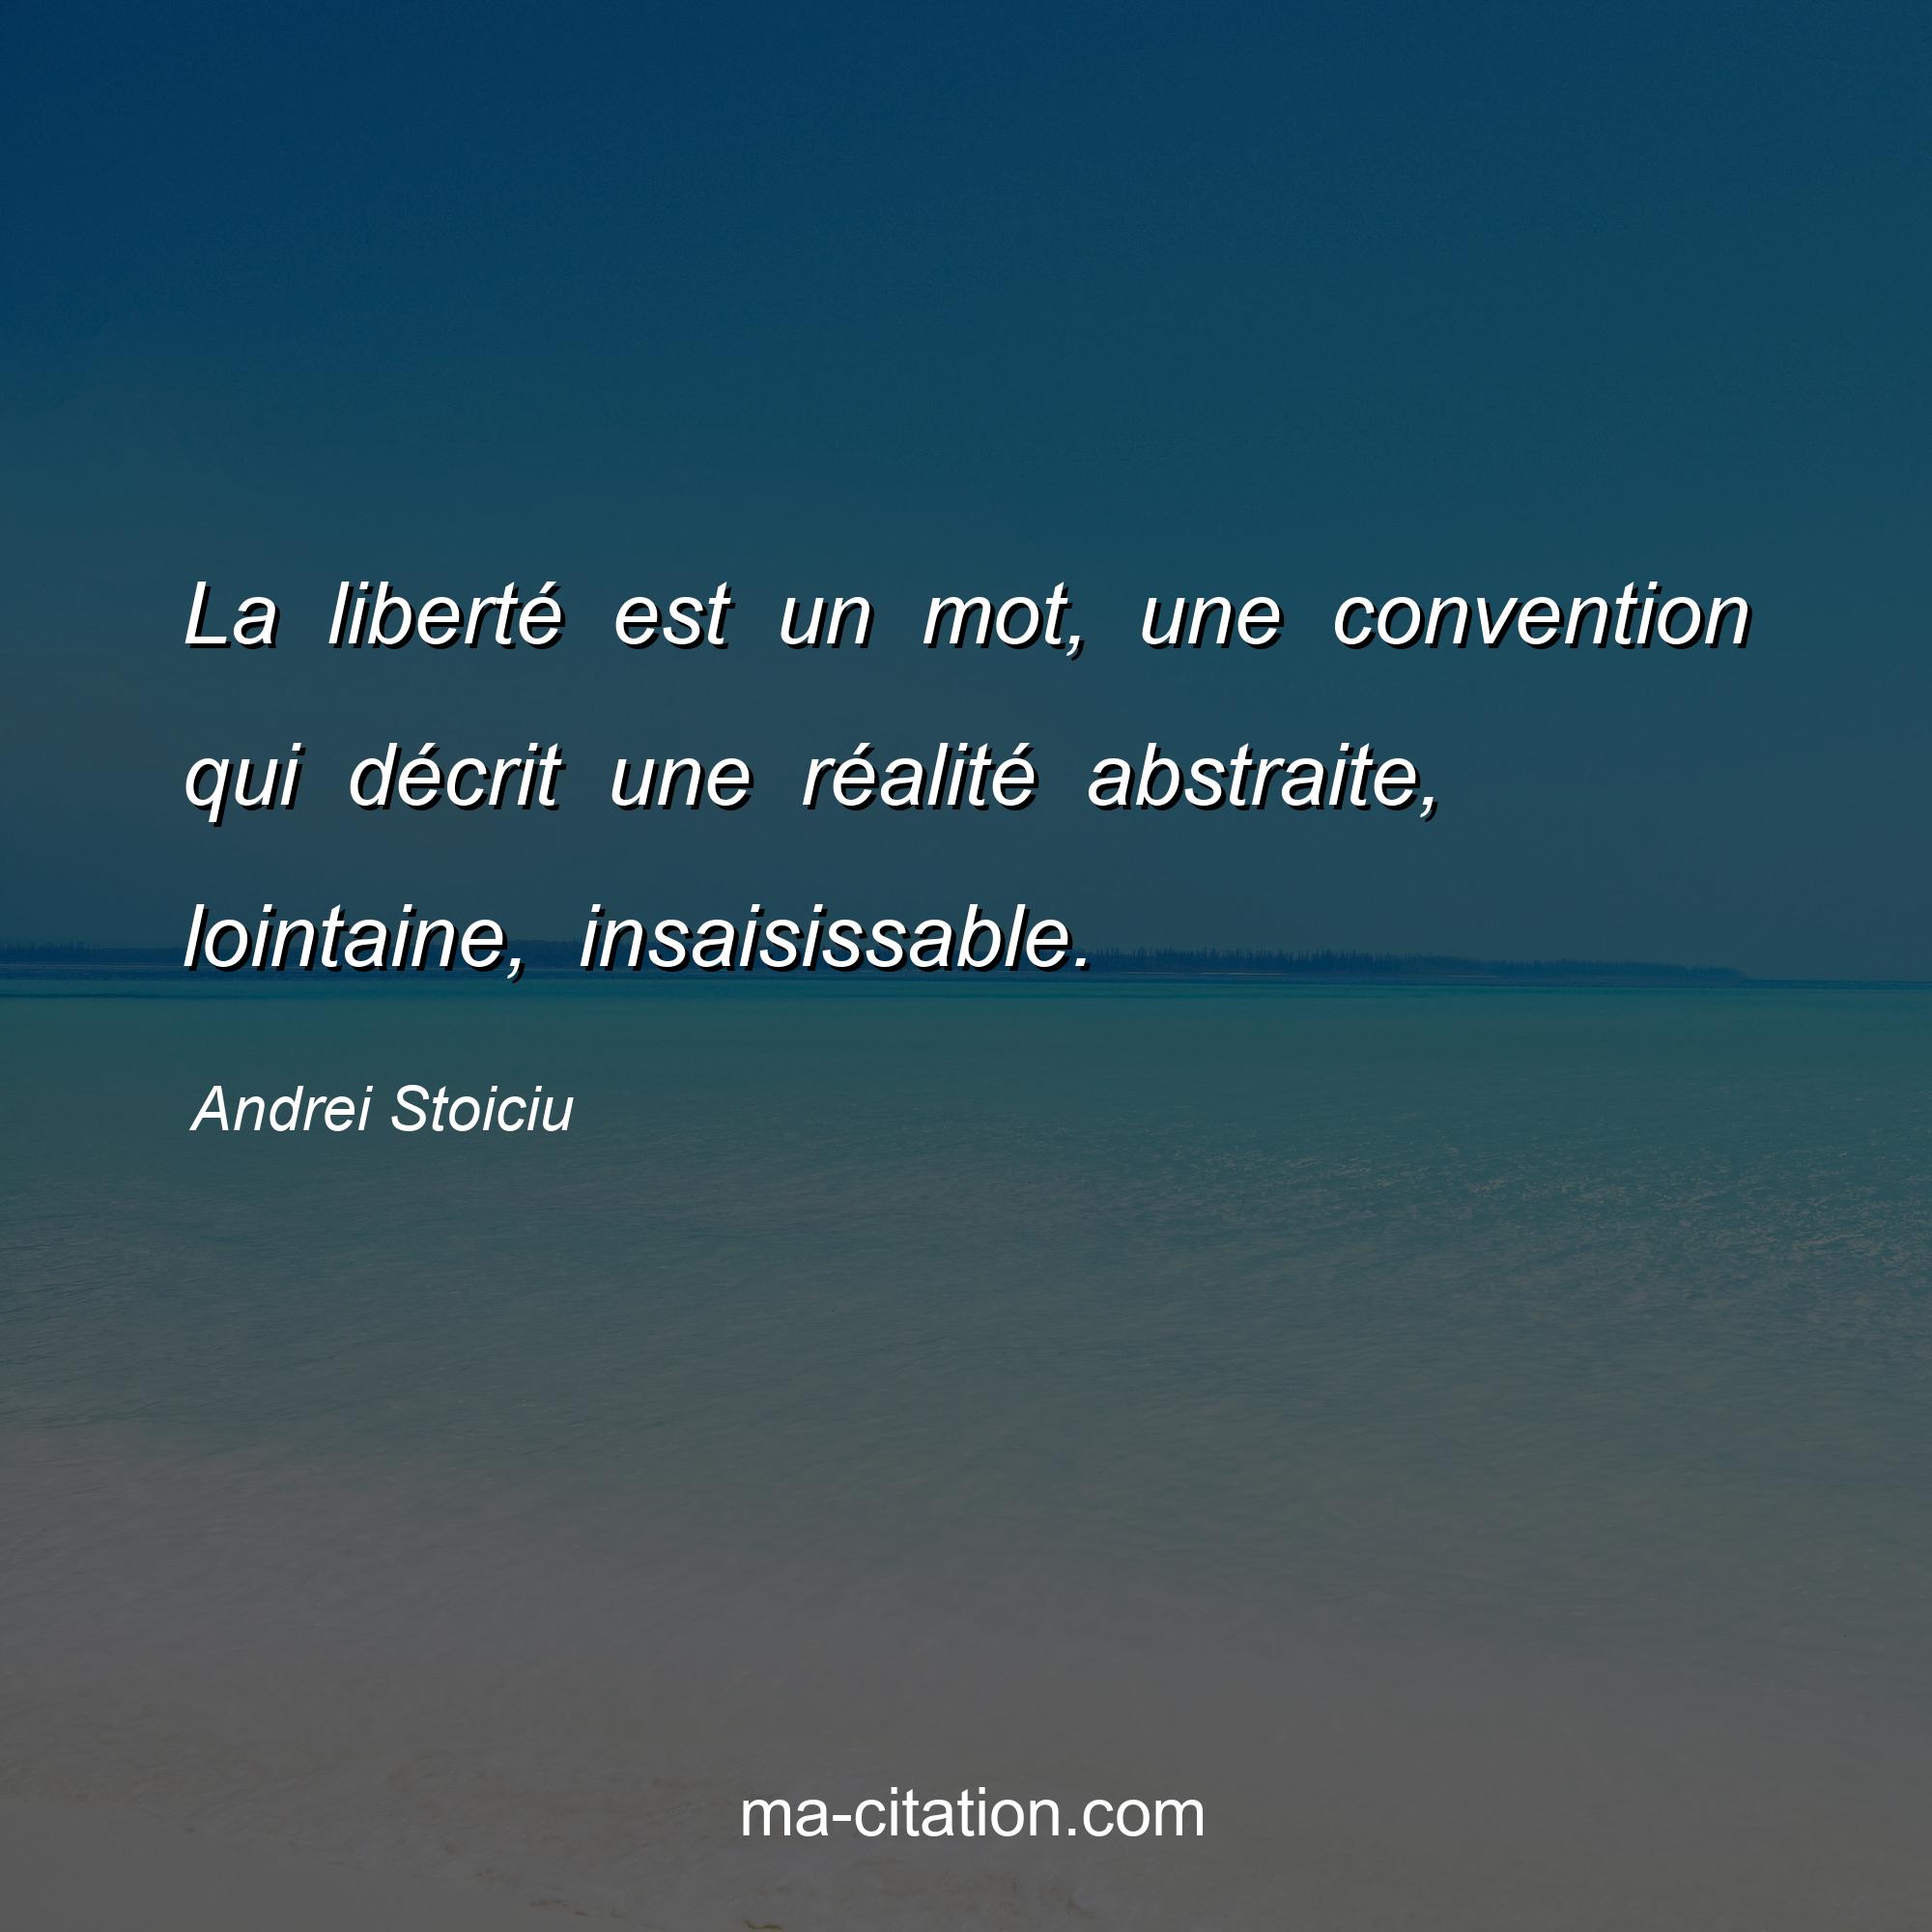 Andrei Stoiciu : La liberté est un mot, une convention qui décrit une réalité abstraite, lointaine, insaisissable.